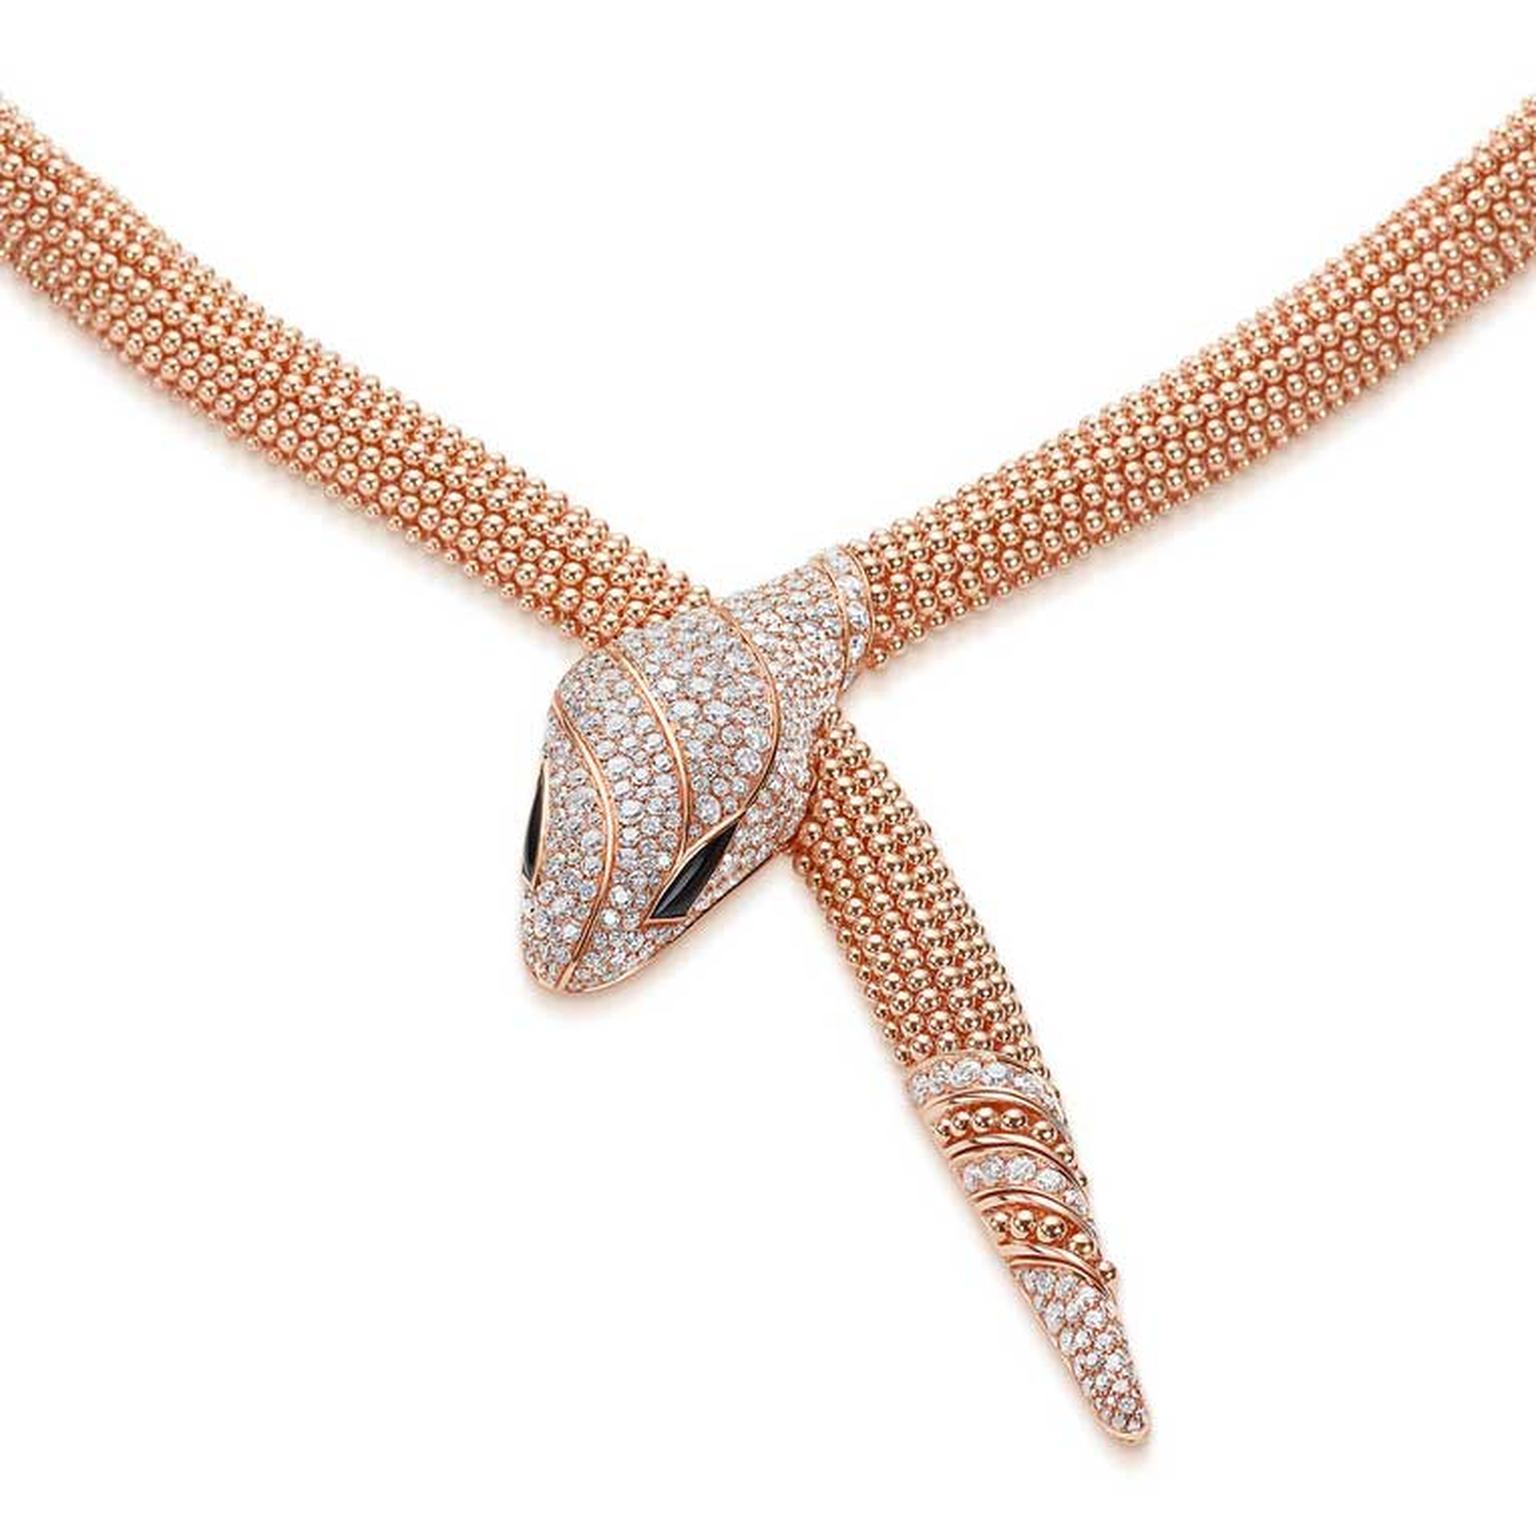 Bulgari Serpenti 75 anniversary Serpenti necklace rose gold and diamonds